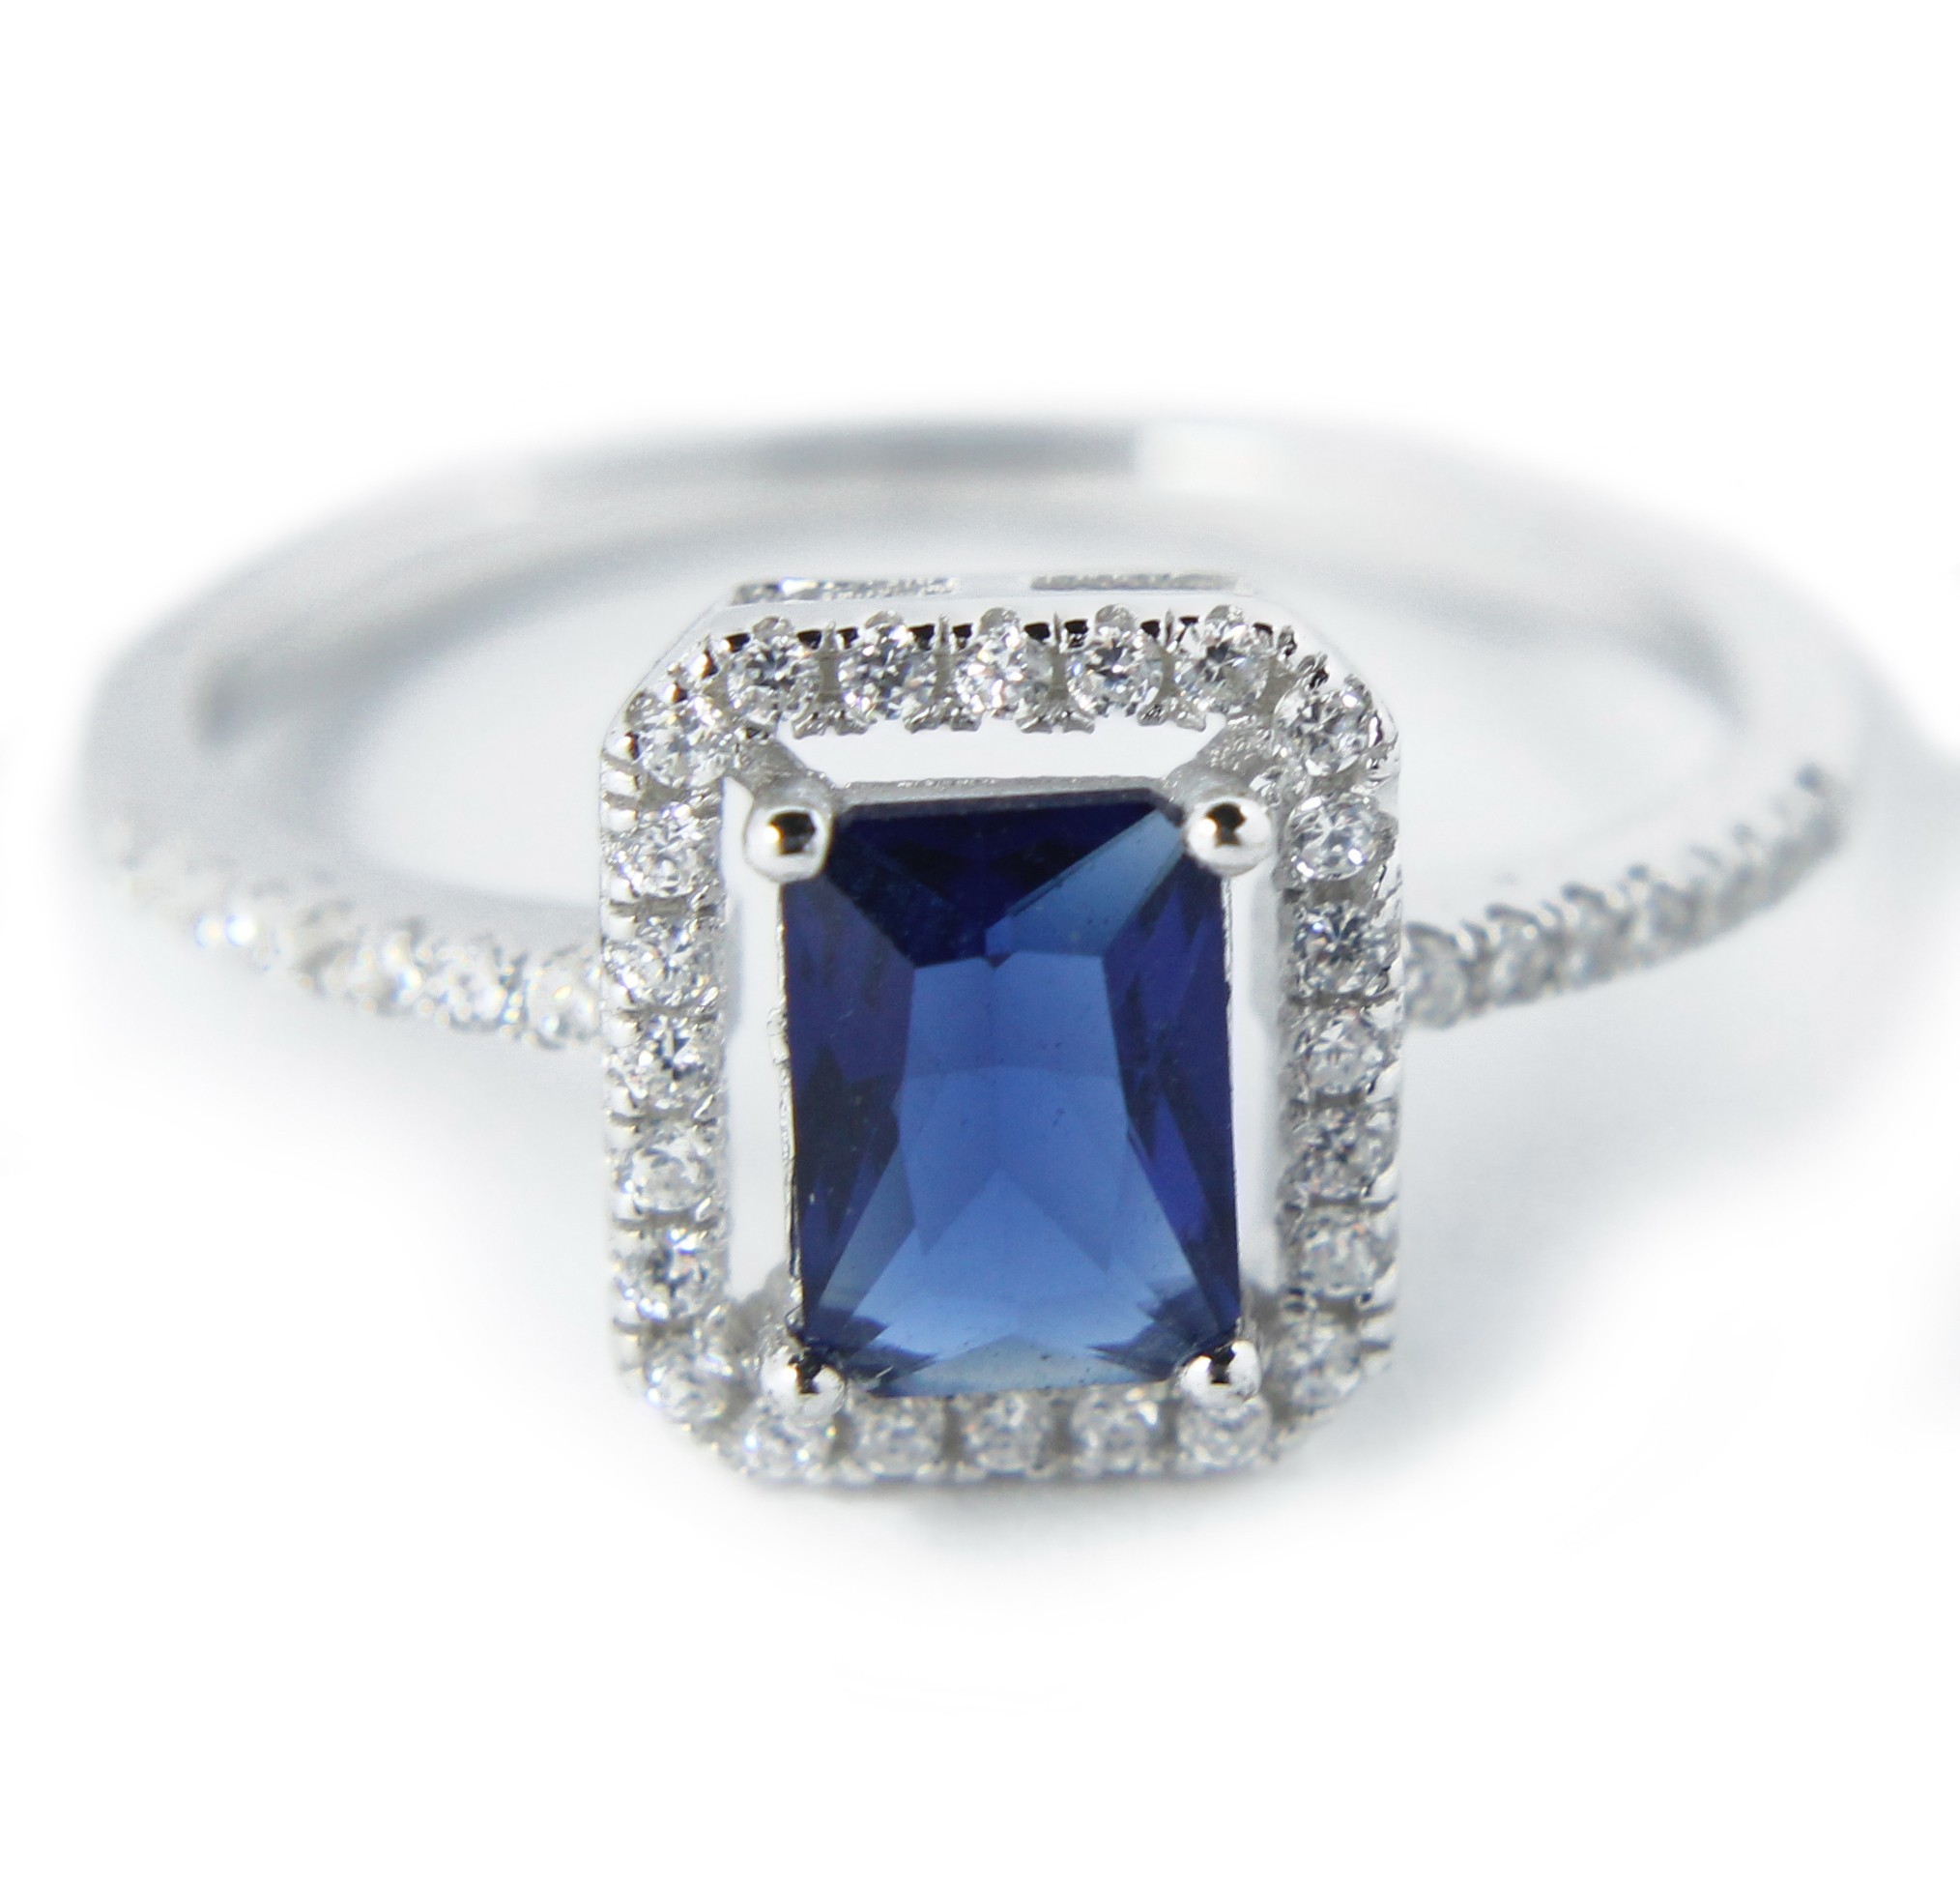 Beautiful 1 Carat Blue Cubic Zirconium Antique Engagement Ring in ...